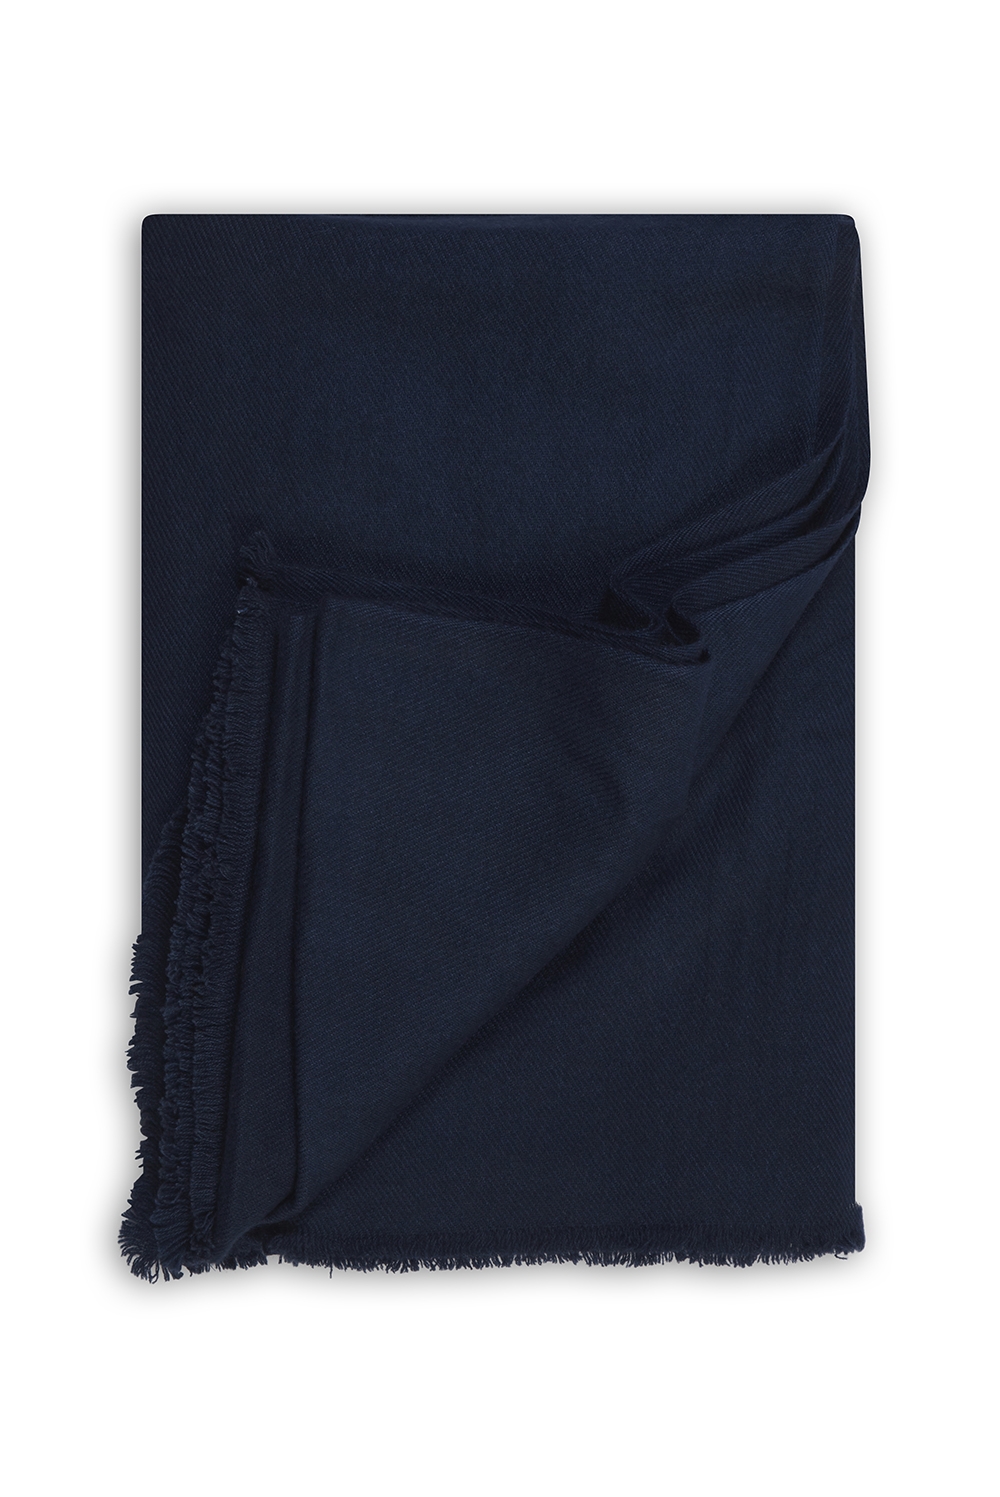 Cashmere accessoires toodoo plain l 220 x 220 navy blau 220x220cm